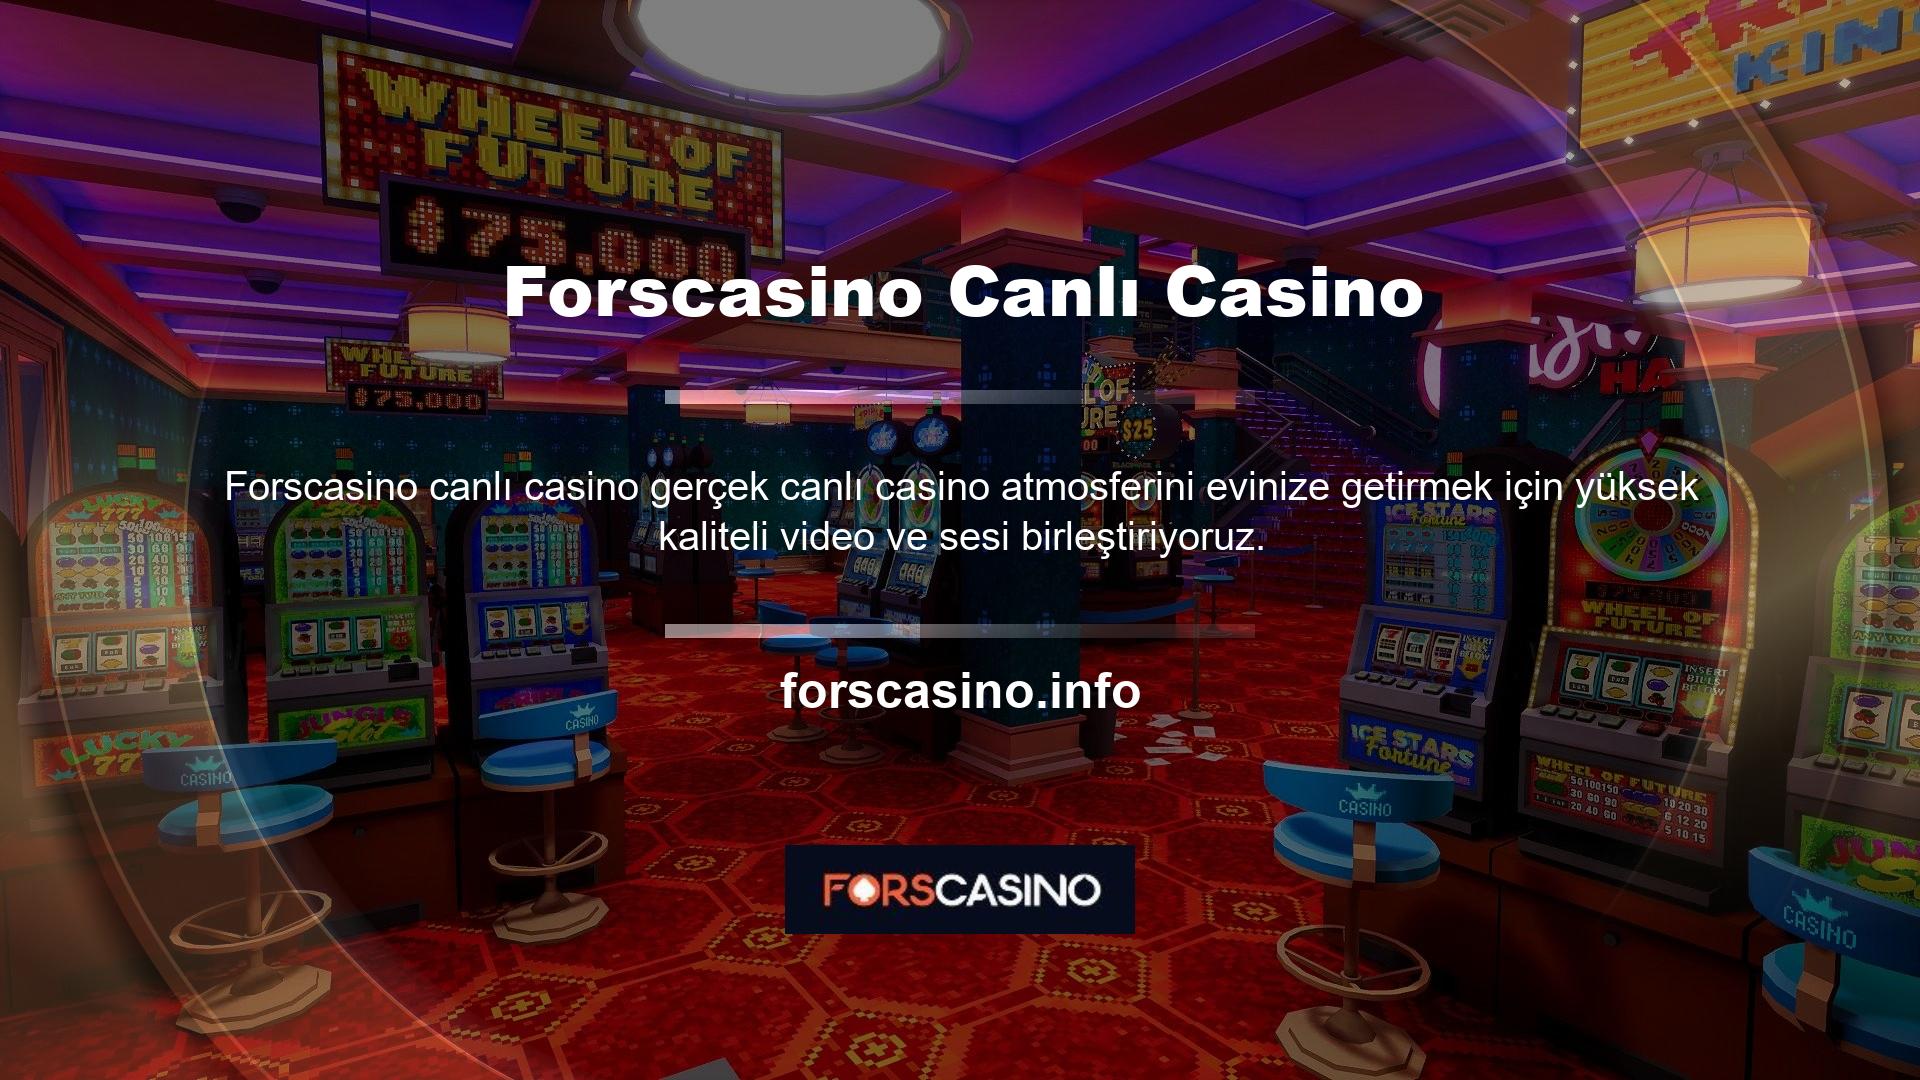 Canlı casino hizmetlerini kontrollü bir ortamda sunan Forscasino, yenilikçi imajına ürünler de eklemeyi ihmal etmiyor